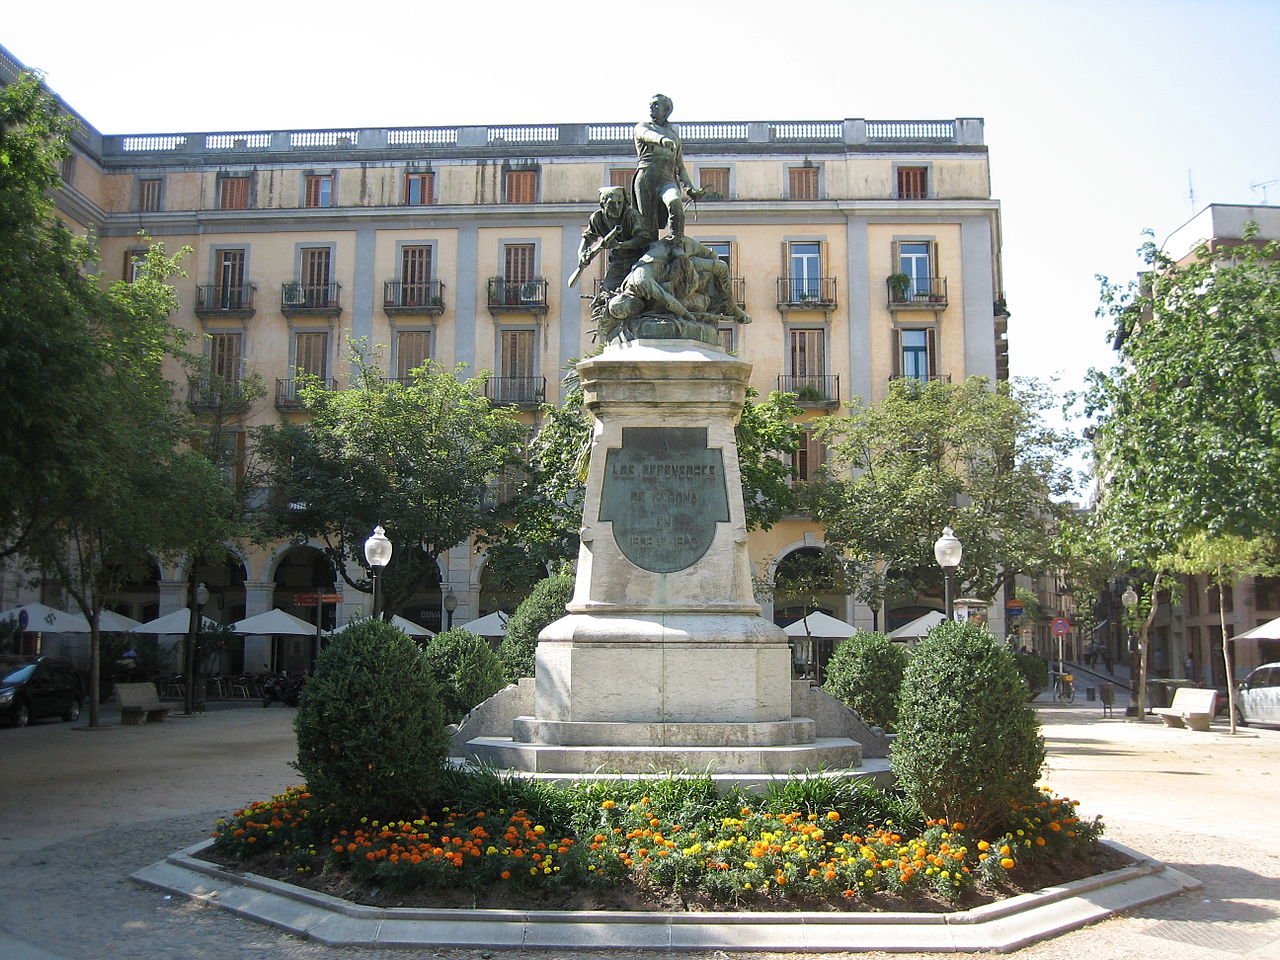 Girona signa la rendició davant l'exèrcit napoleònic